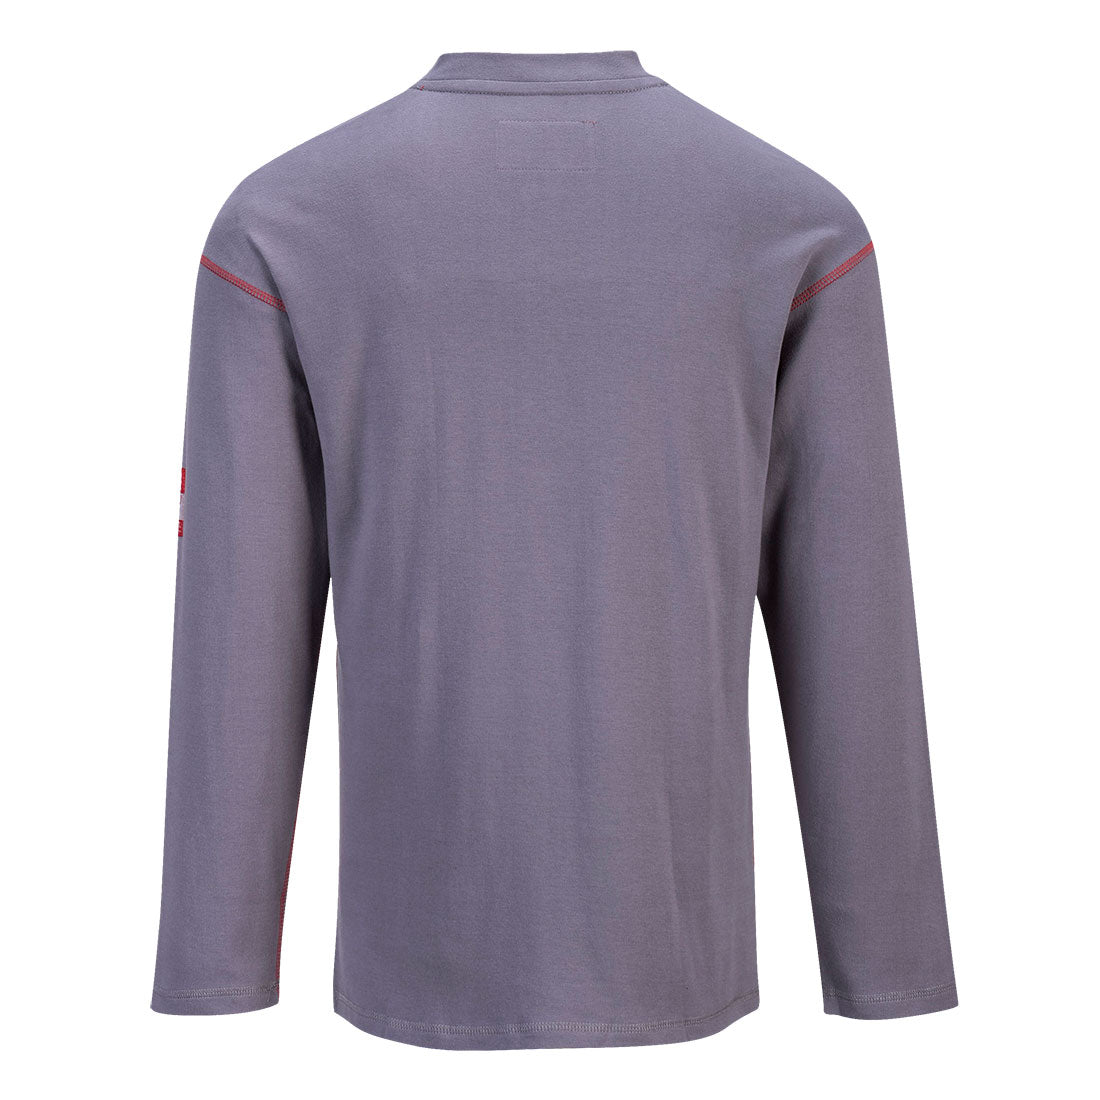 Portwest FR02GRR Bizflame FR Flame Resistant Henley T-Shirt in Grey